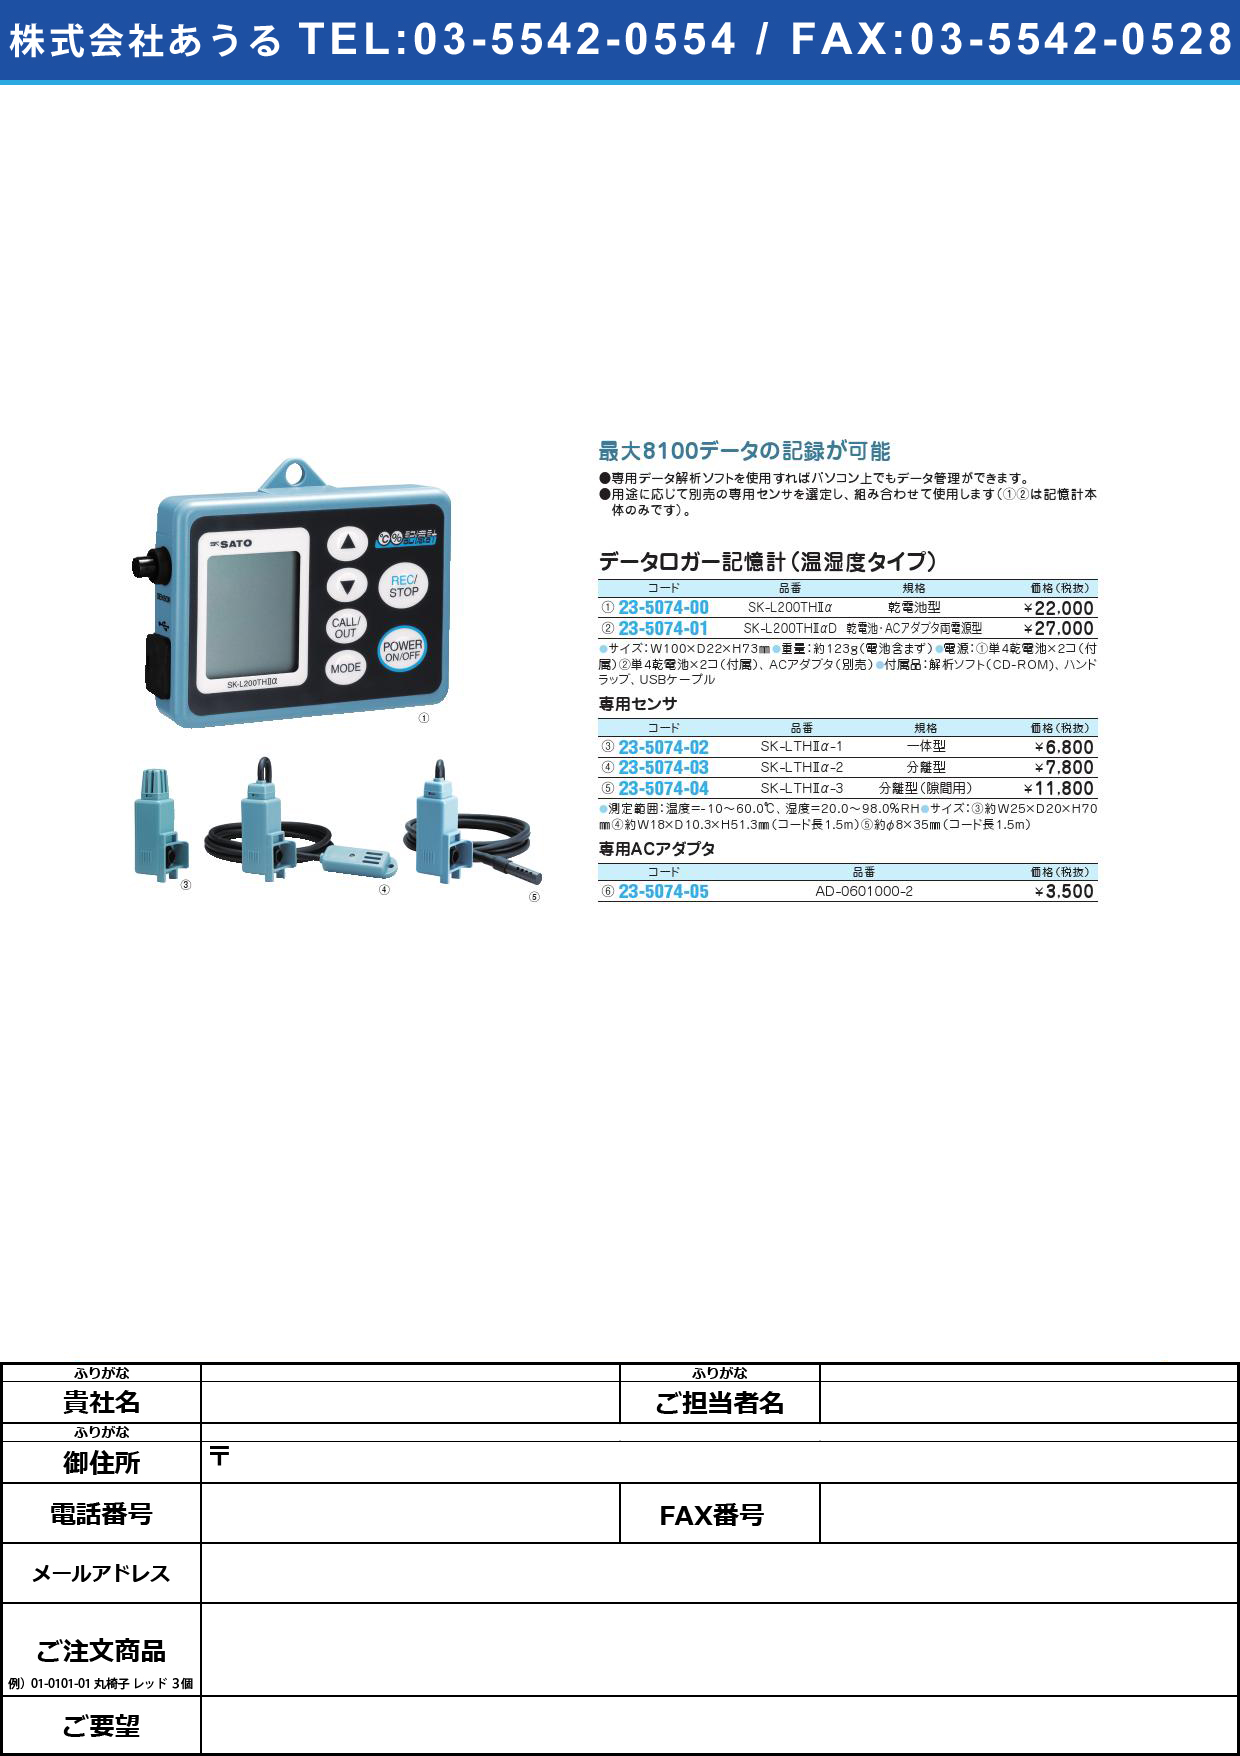 (23-5074-00)データロガー記憶計（温湿度タイプ） SK-L200TH2Aﾃﾞｰﾀﾛｶﾞｰｷｵｸｹｲ(23-5074-00)【1台単位】【2013年カタログ商品】